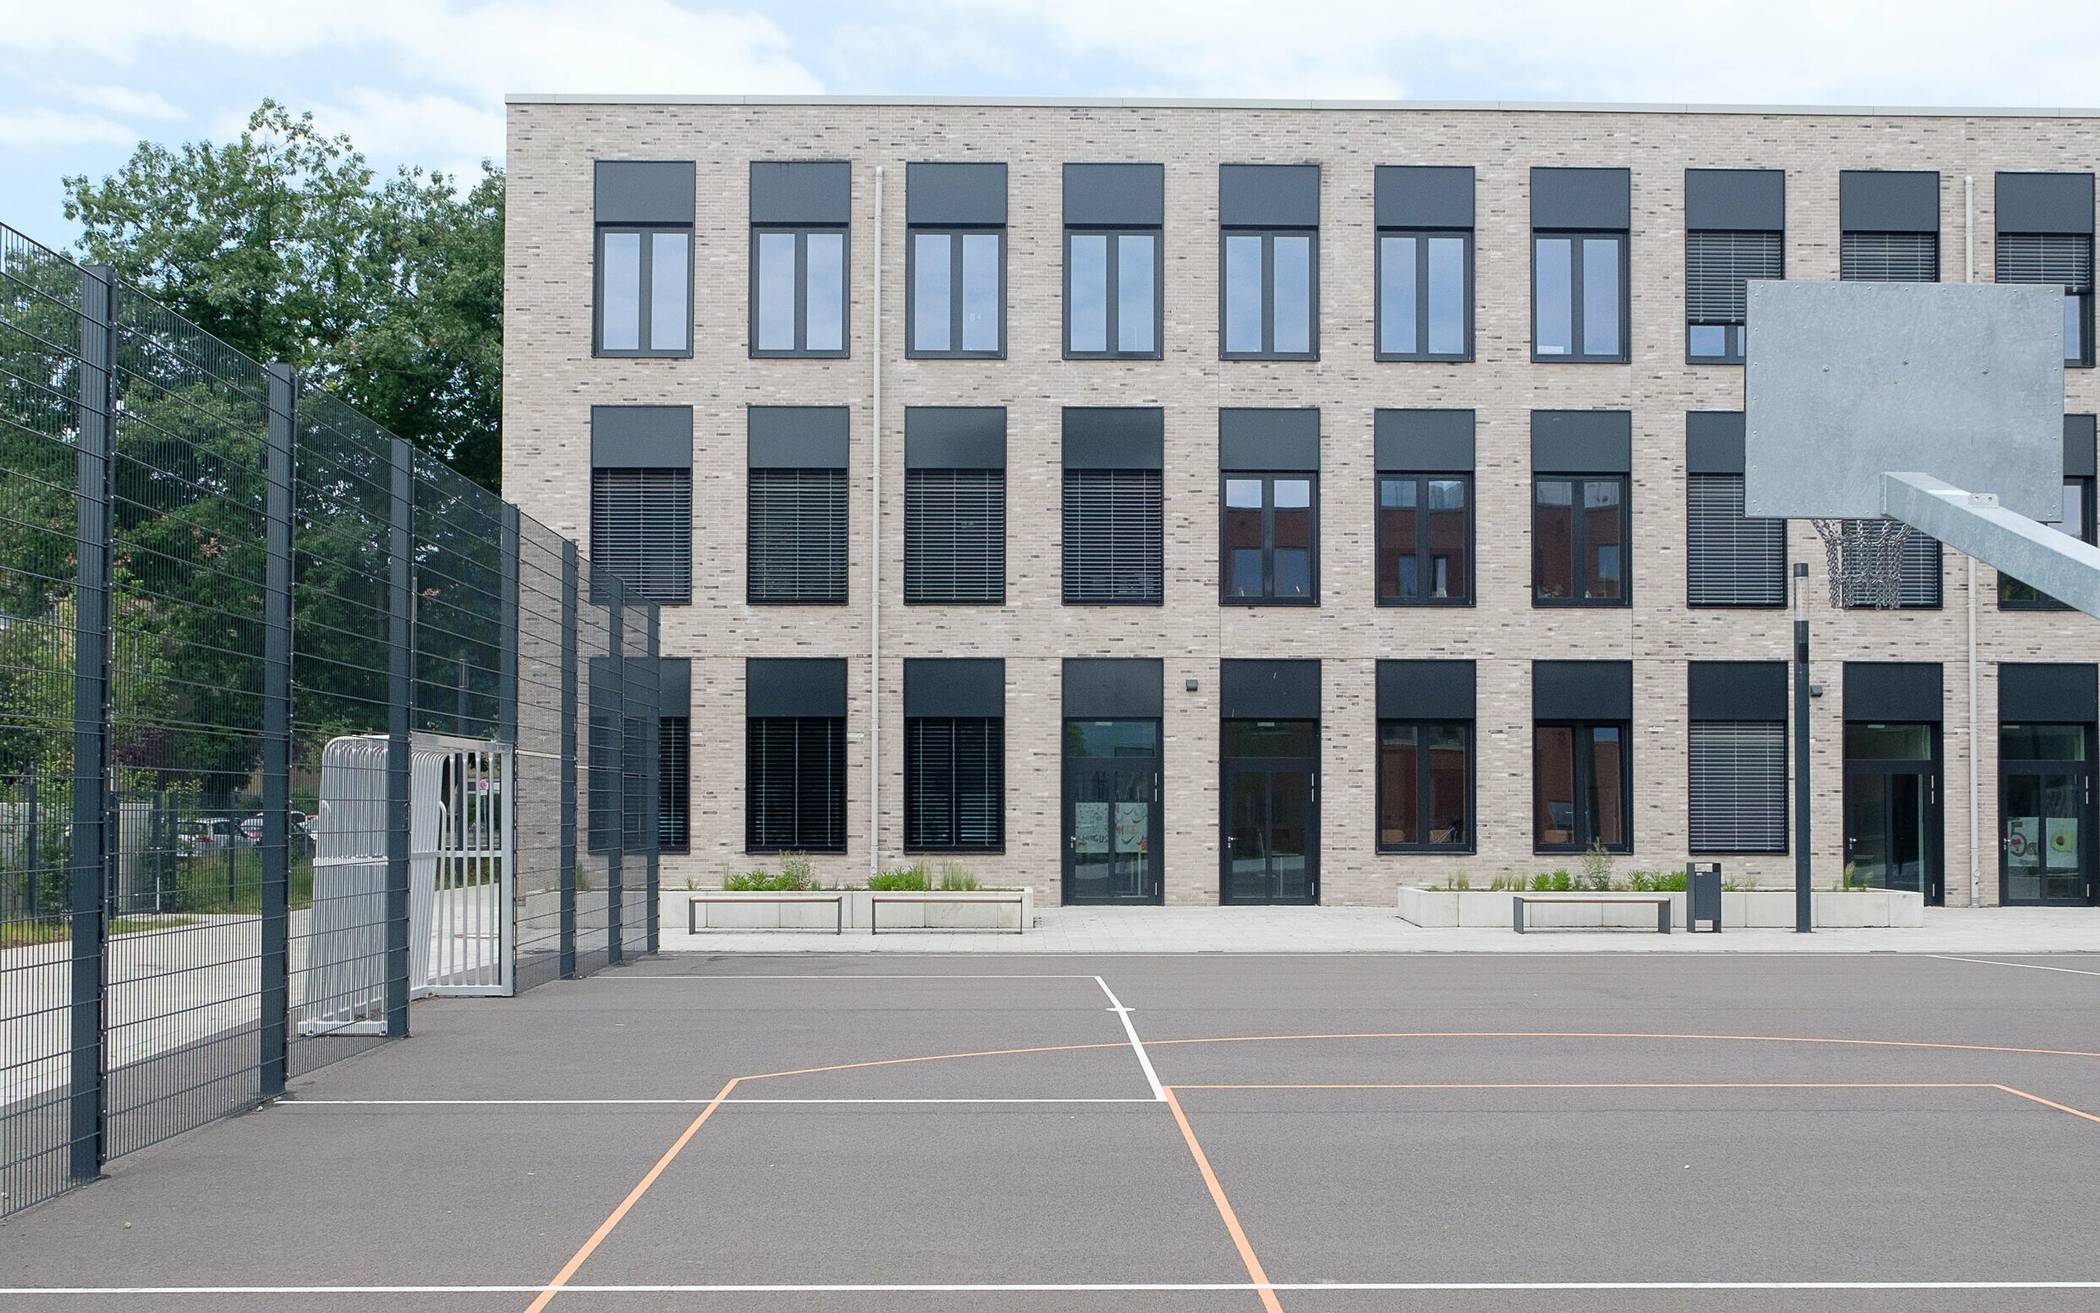  Auf dem Schulhof finden sich eine moderne Calisthenics-Anlage, ein Basketballfeld und ein Soccer-Platz.  